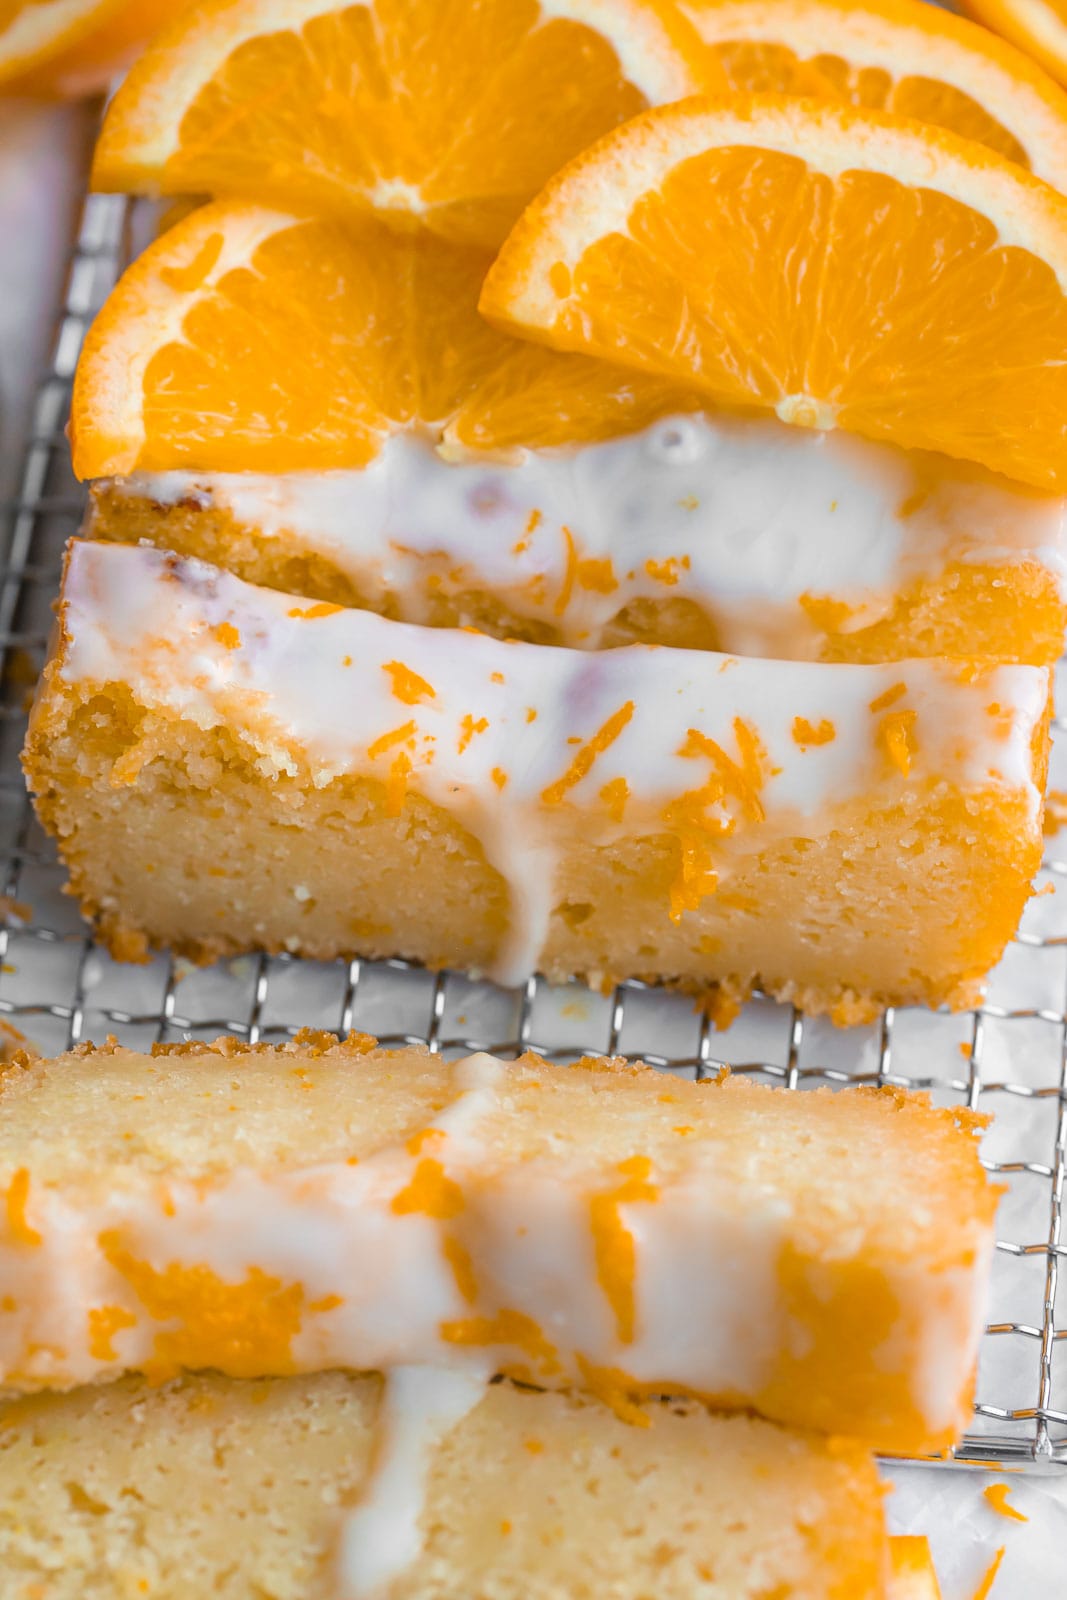 Orange Loaf Cake with sliced orange on top.